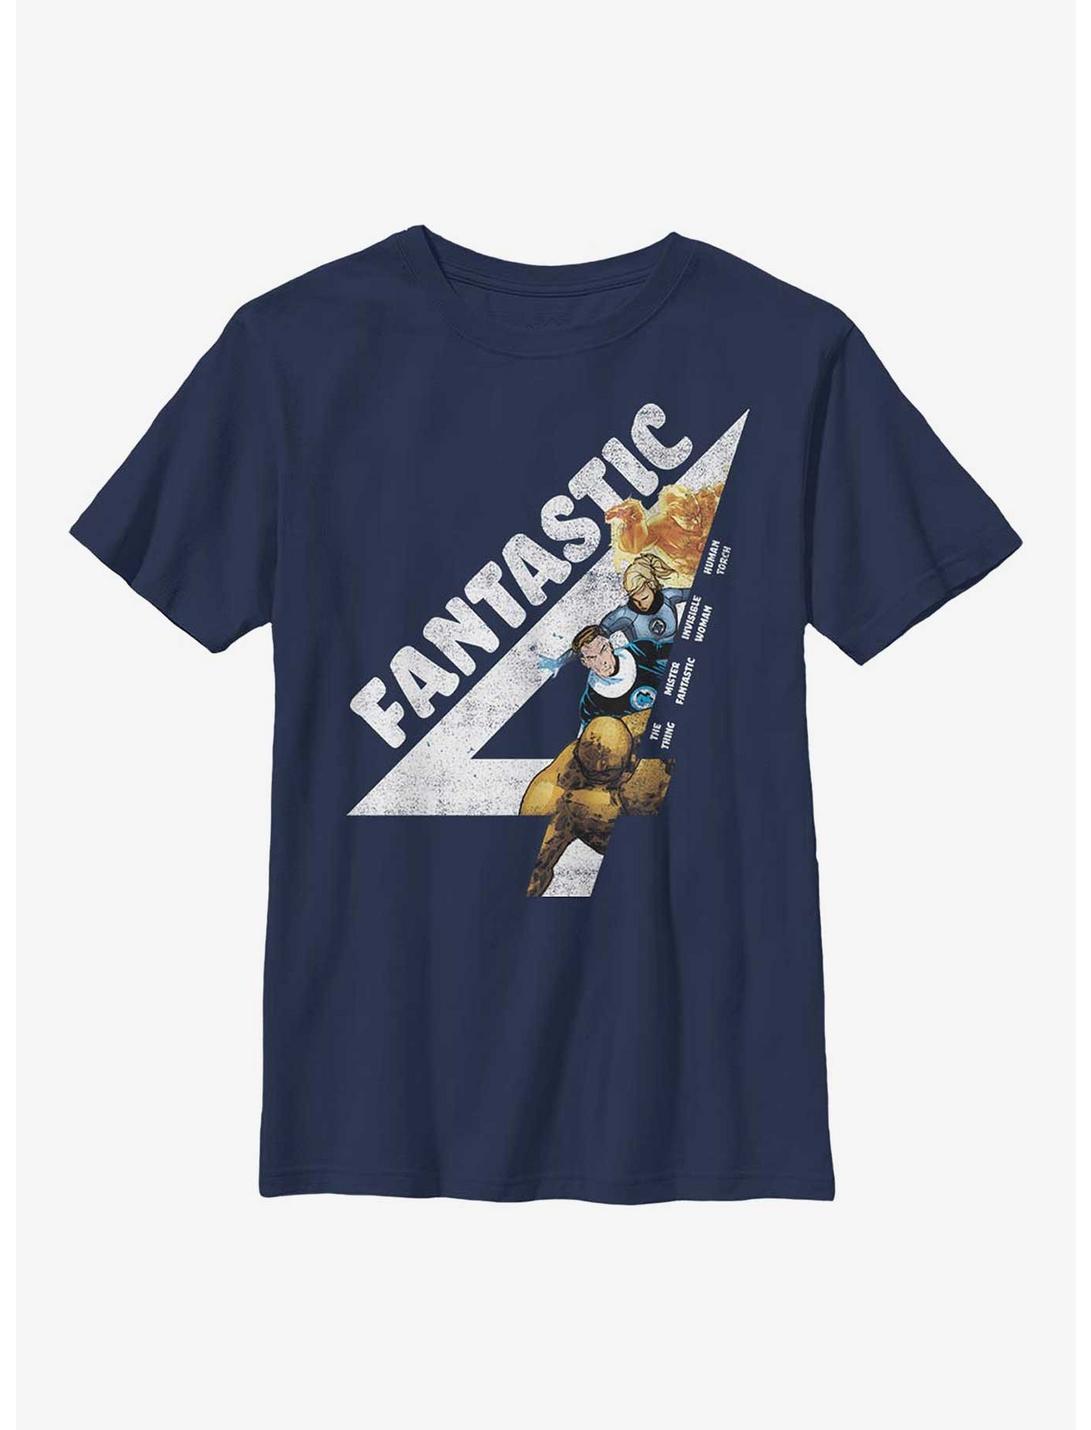 Marvel Fantastic Four Fantastically Vintage Youth T-Shirt, NAVY, hi-res